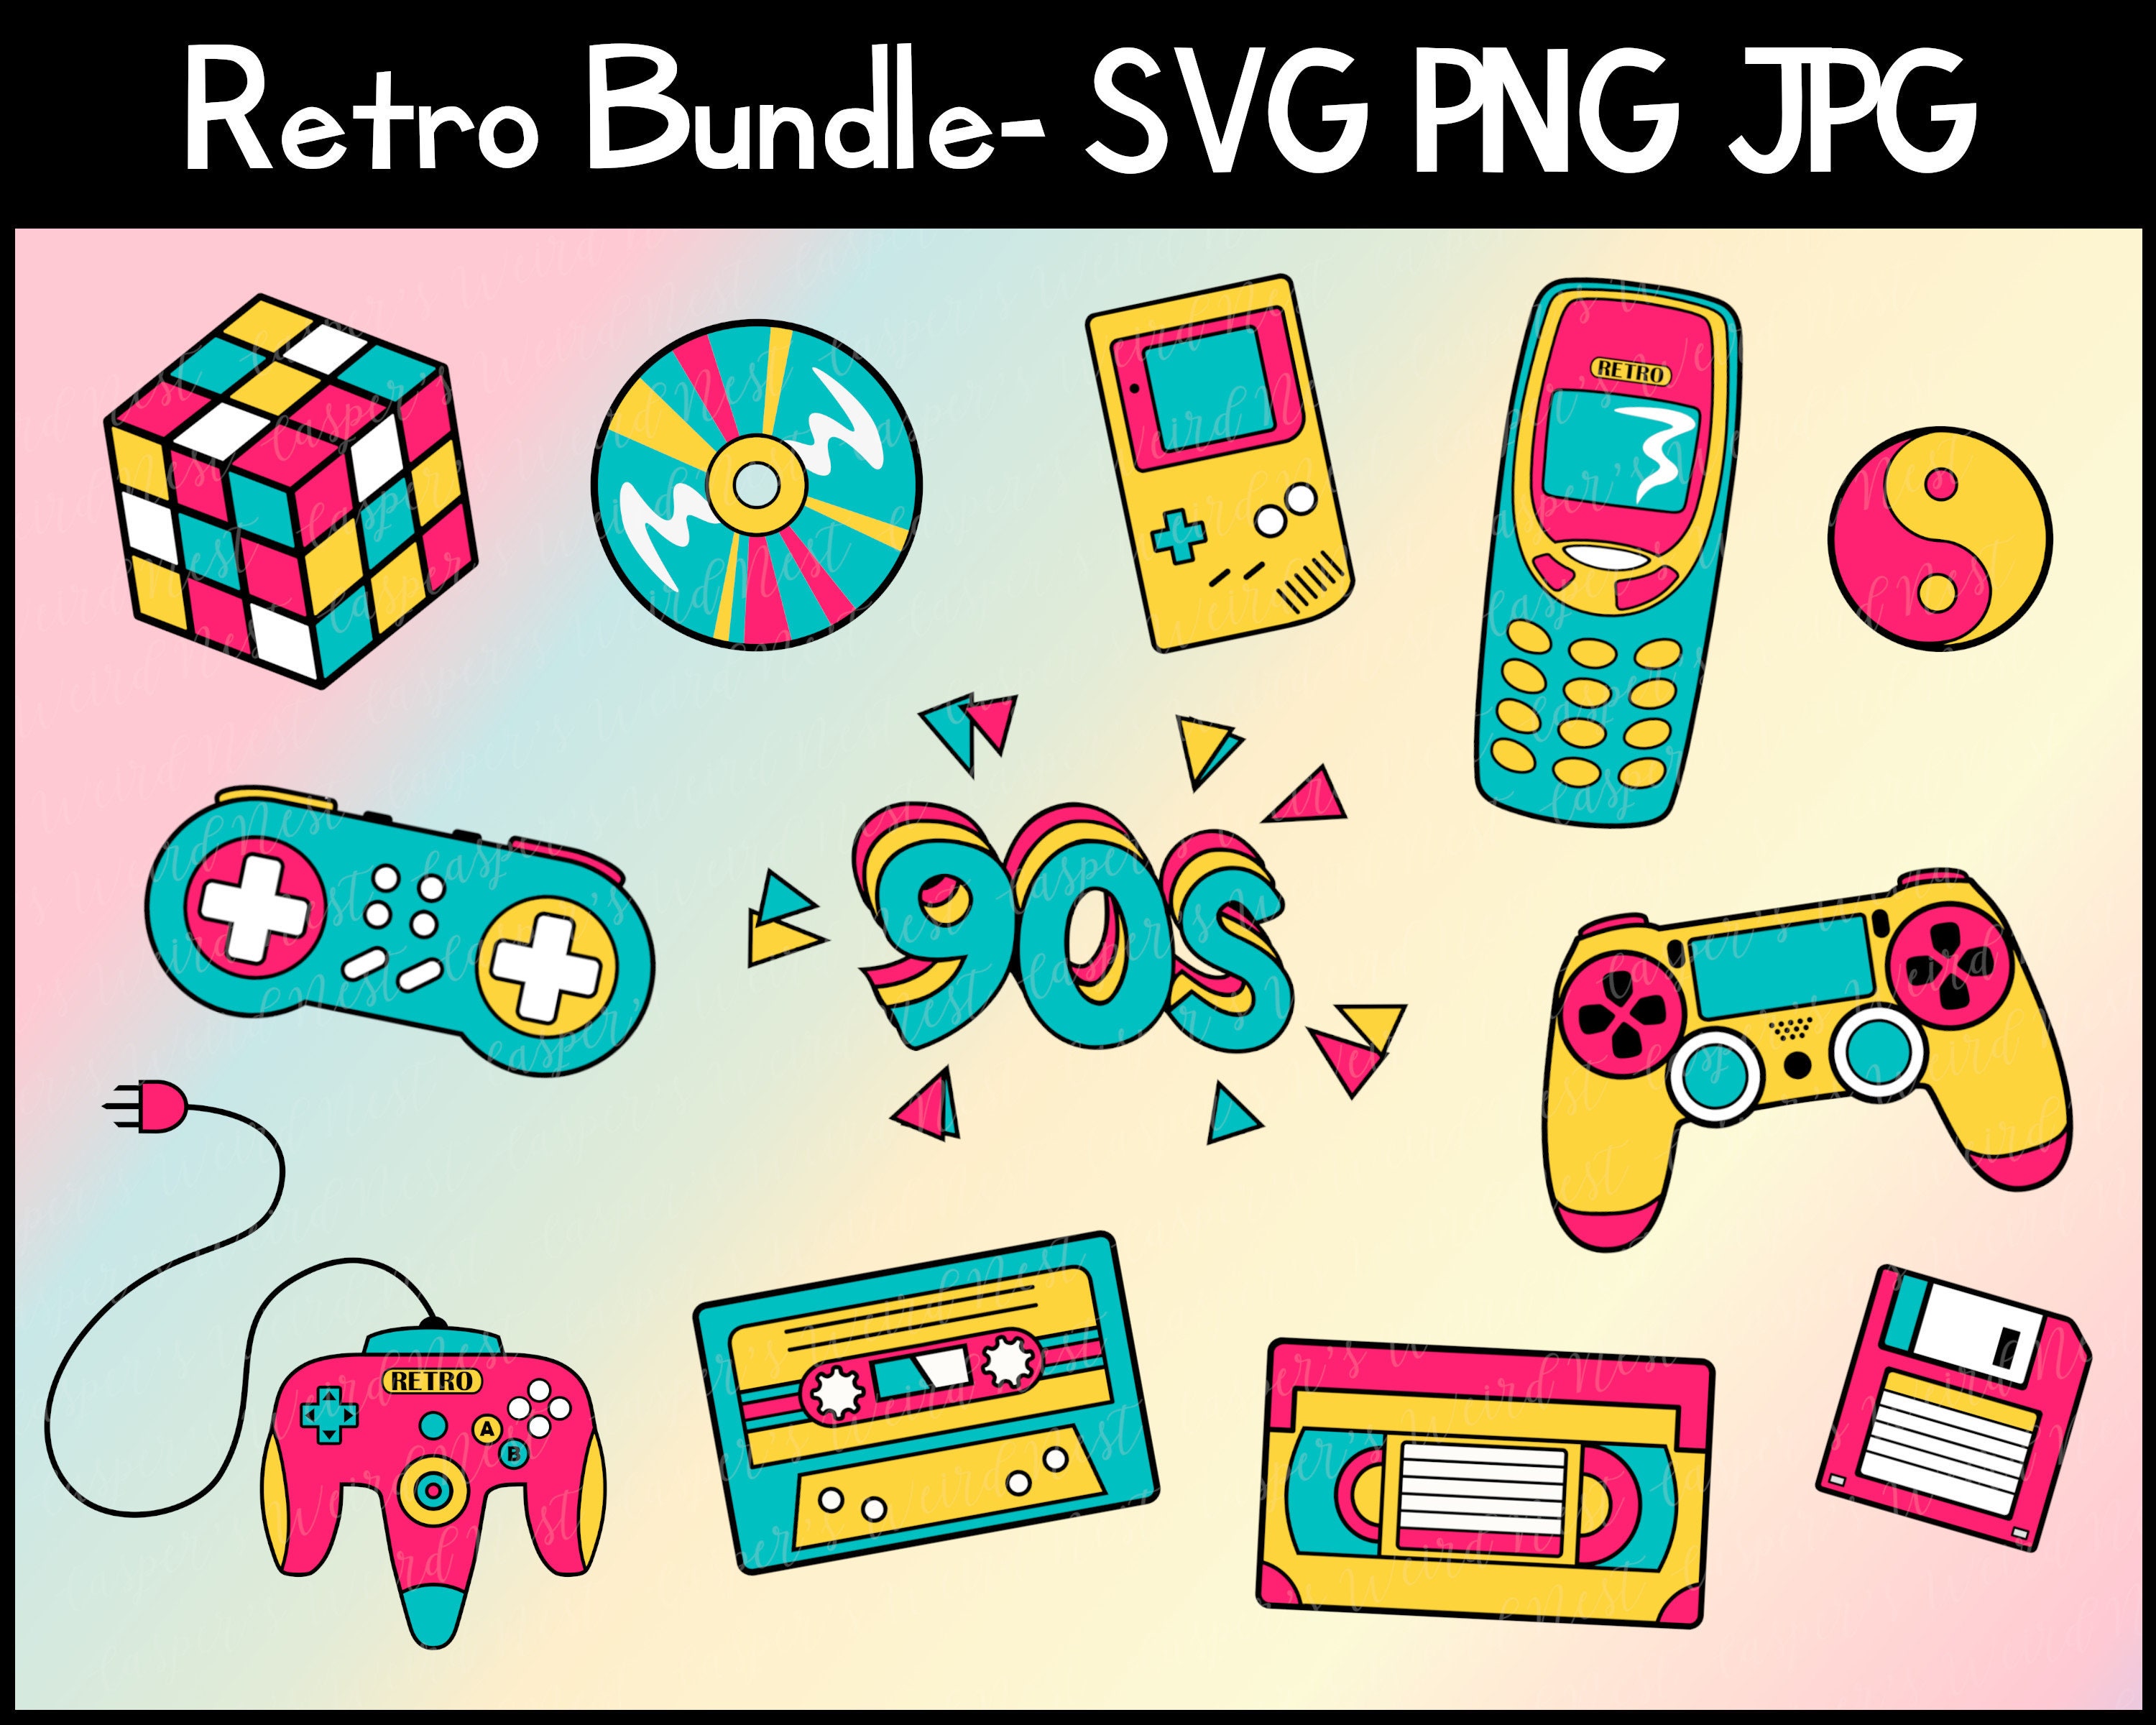 Hãy tươi sáng bức màn cuộc sống của bạn với bộ sưu tập Retro / 90s Bundle SVG PNG JPG Transparent Background Online! Bao gồm nhiều thiết kế khác nhau, bộ sưu tập này sẽ đem lại cảm giác thăng hoa cho bạn. Nhấn vào hình ảnh để tìm hiểu thêm về các gói khác nhau mà bạn có thể mua.